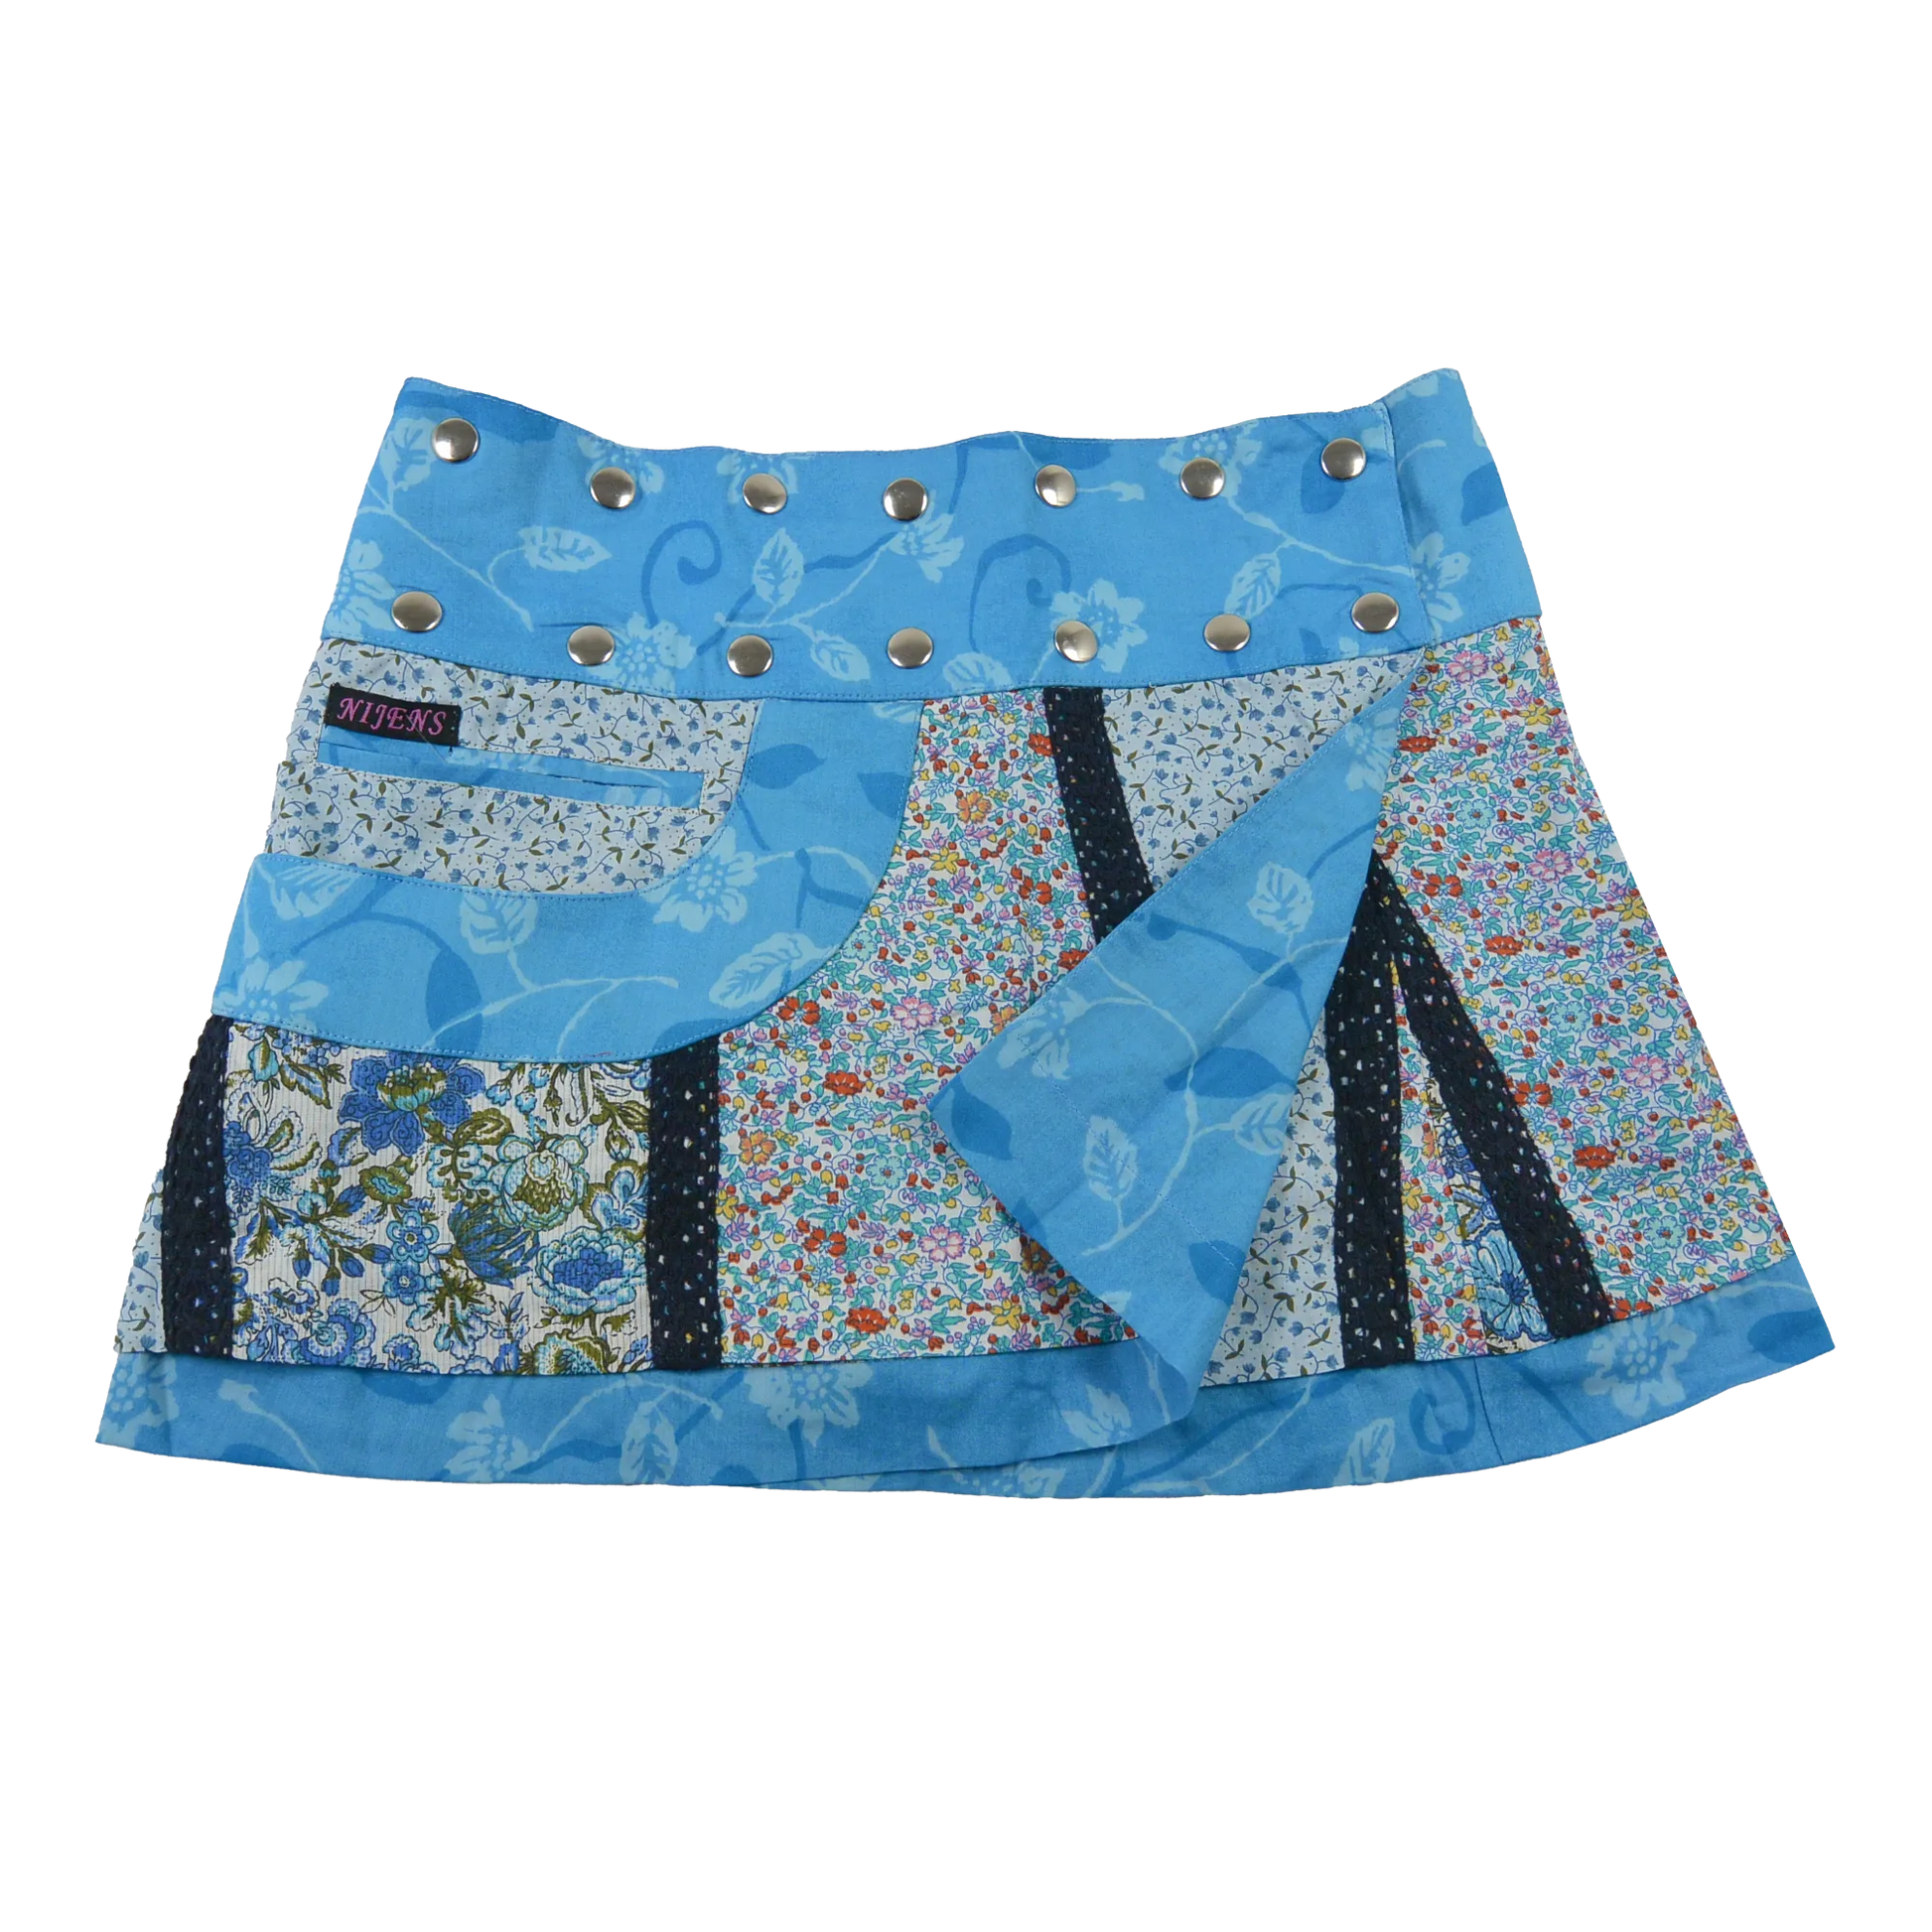 Sommerrock aus Baumwolle in Blau/Blumen, bunt im Mustermix. Umfang ist verstellbar mit doppelter Druckknopfleiste mit Seitentasche.